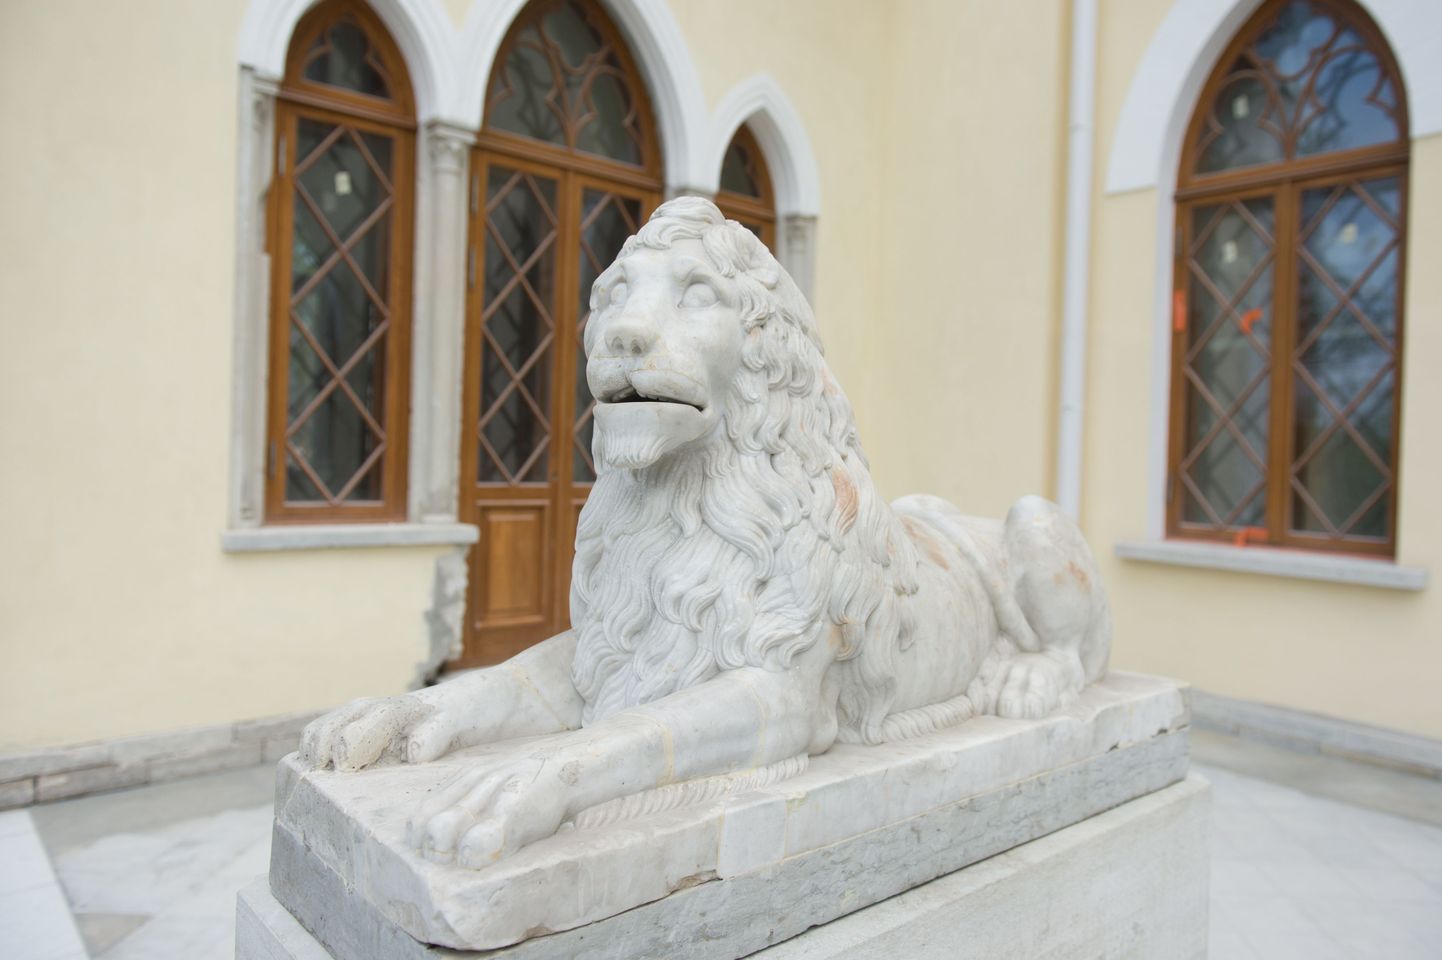 Keila-Joa lõvide vanuseks hinnatakse ligi paarsada aastat, aga võibolla rohkemgi.